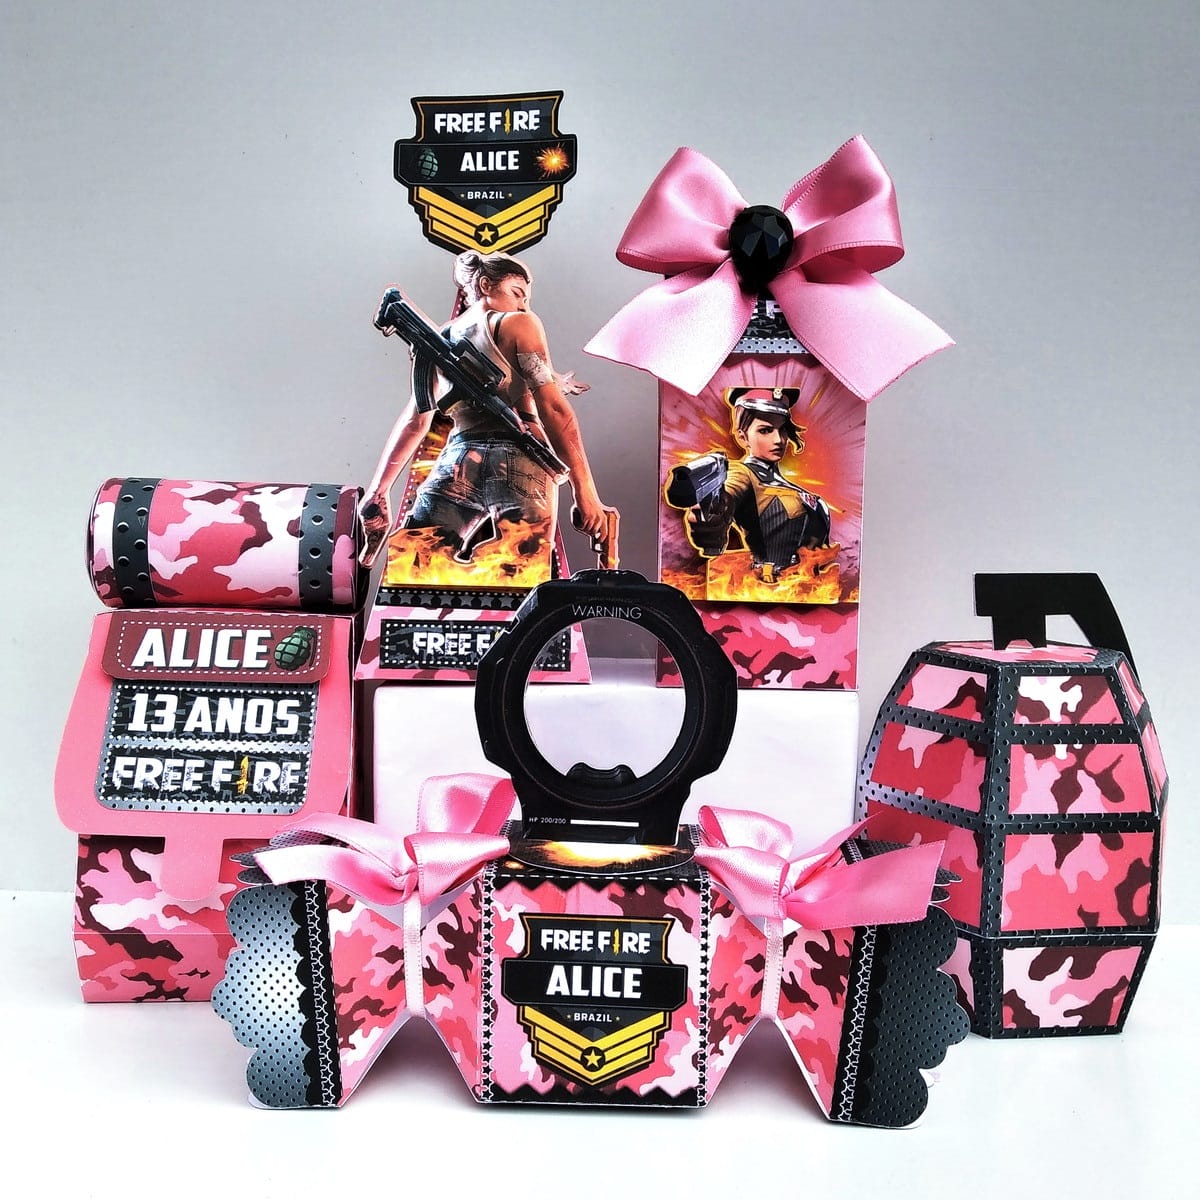 Kit de festa com itens de Free Fire em cor de rosa